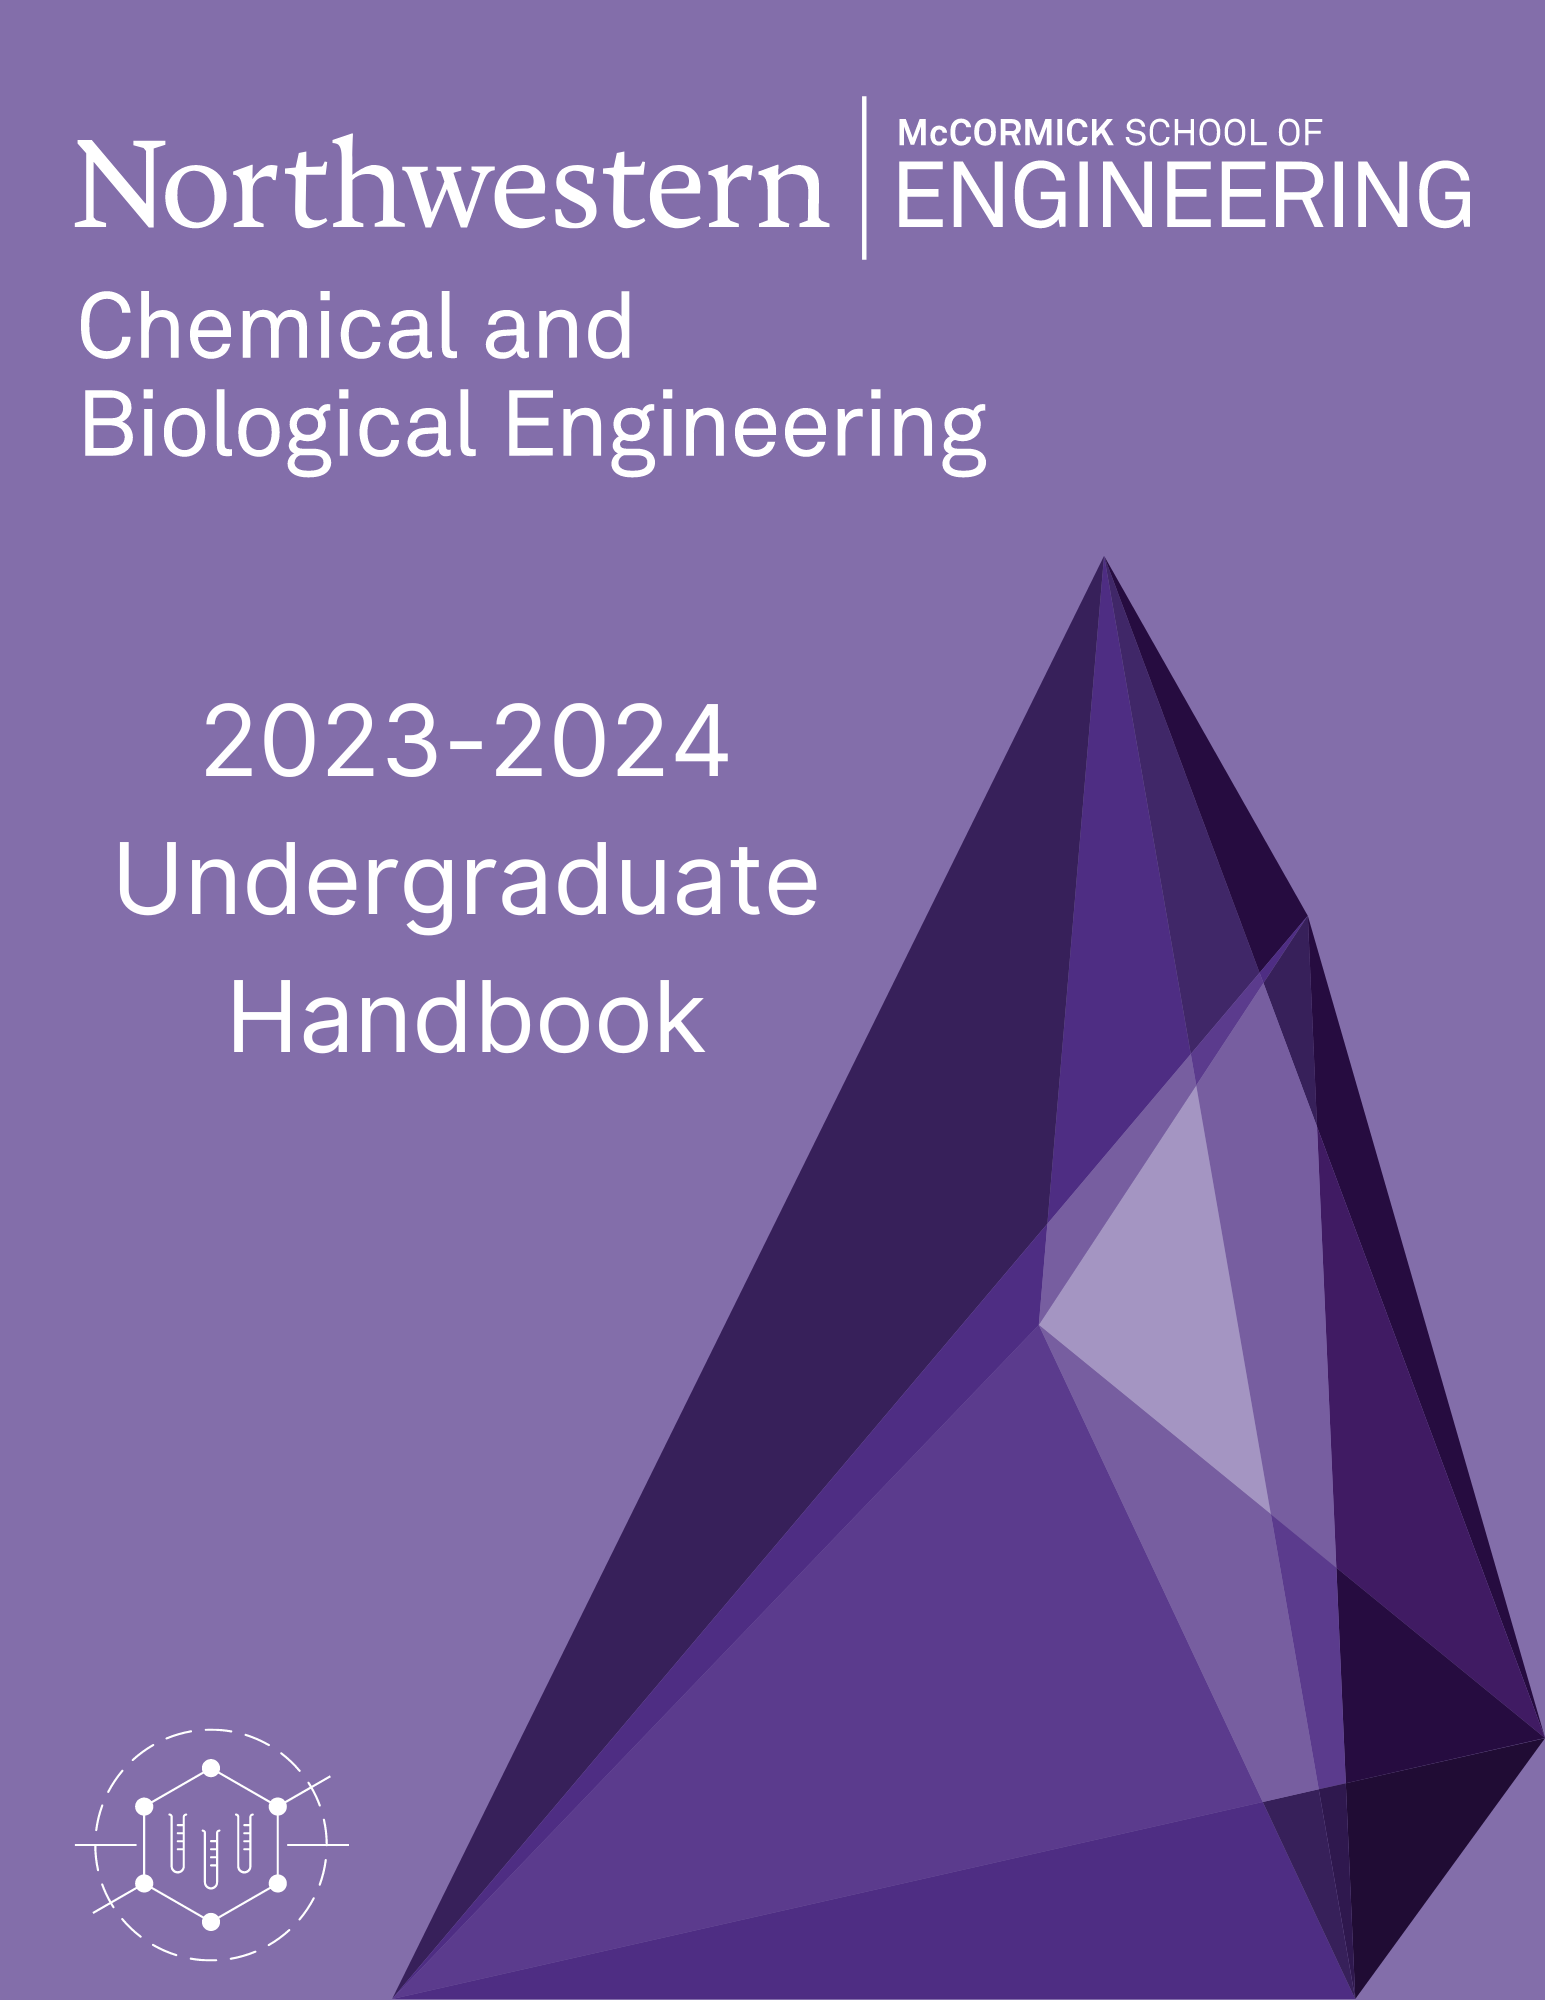 2023-ug-handbook-cover